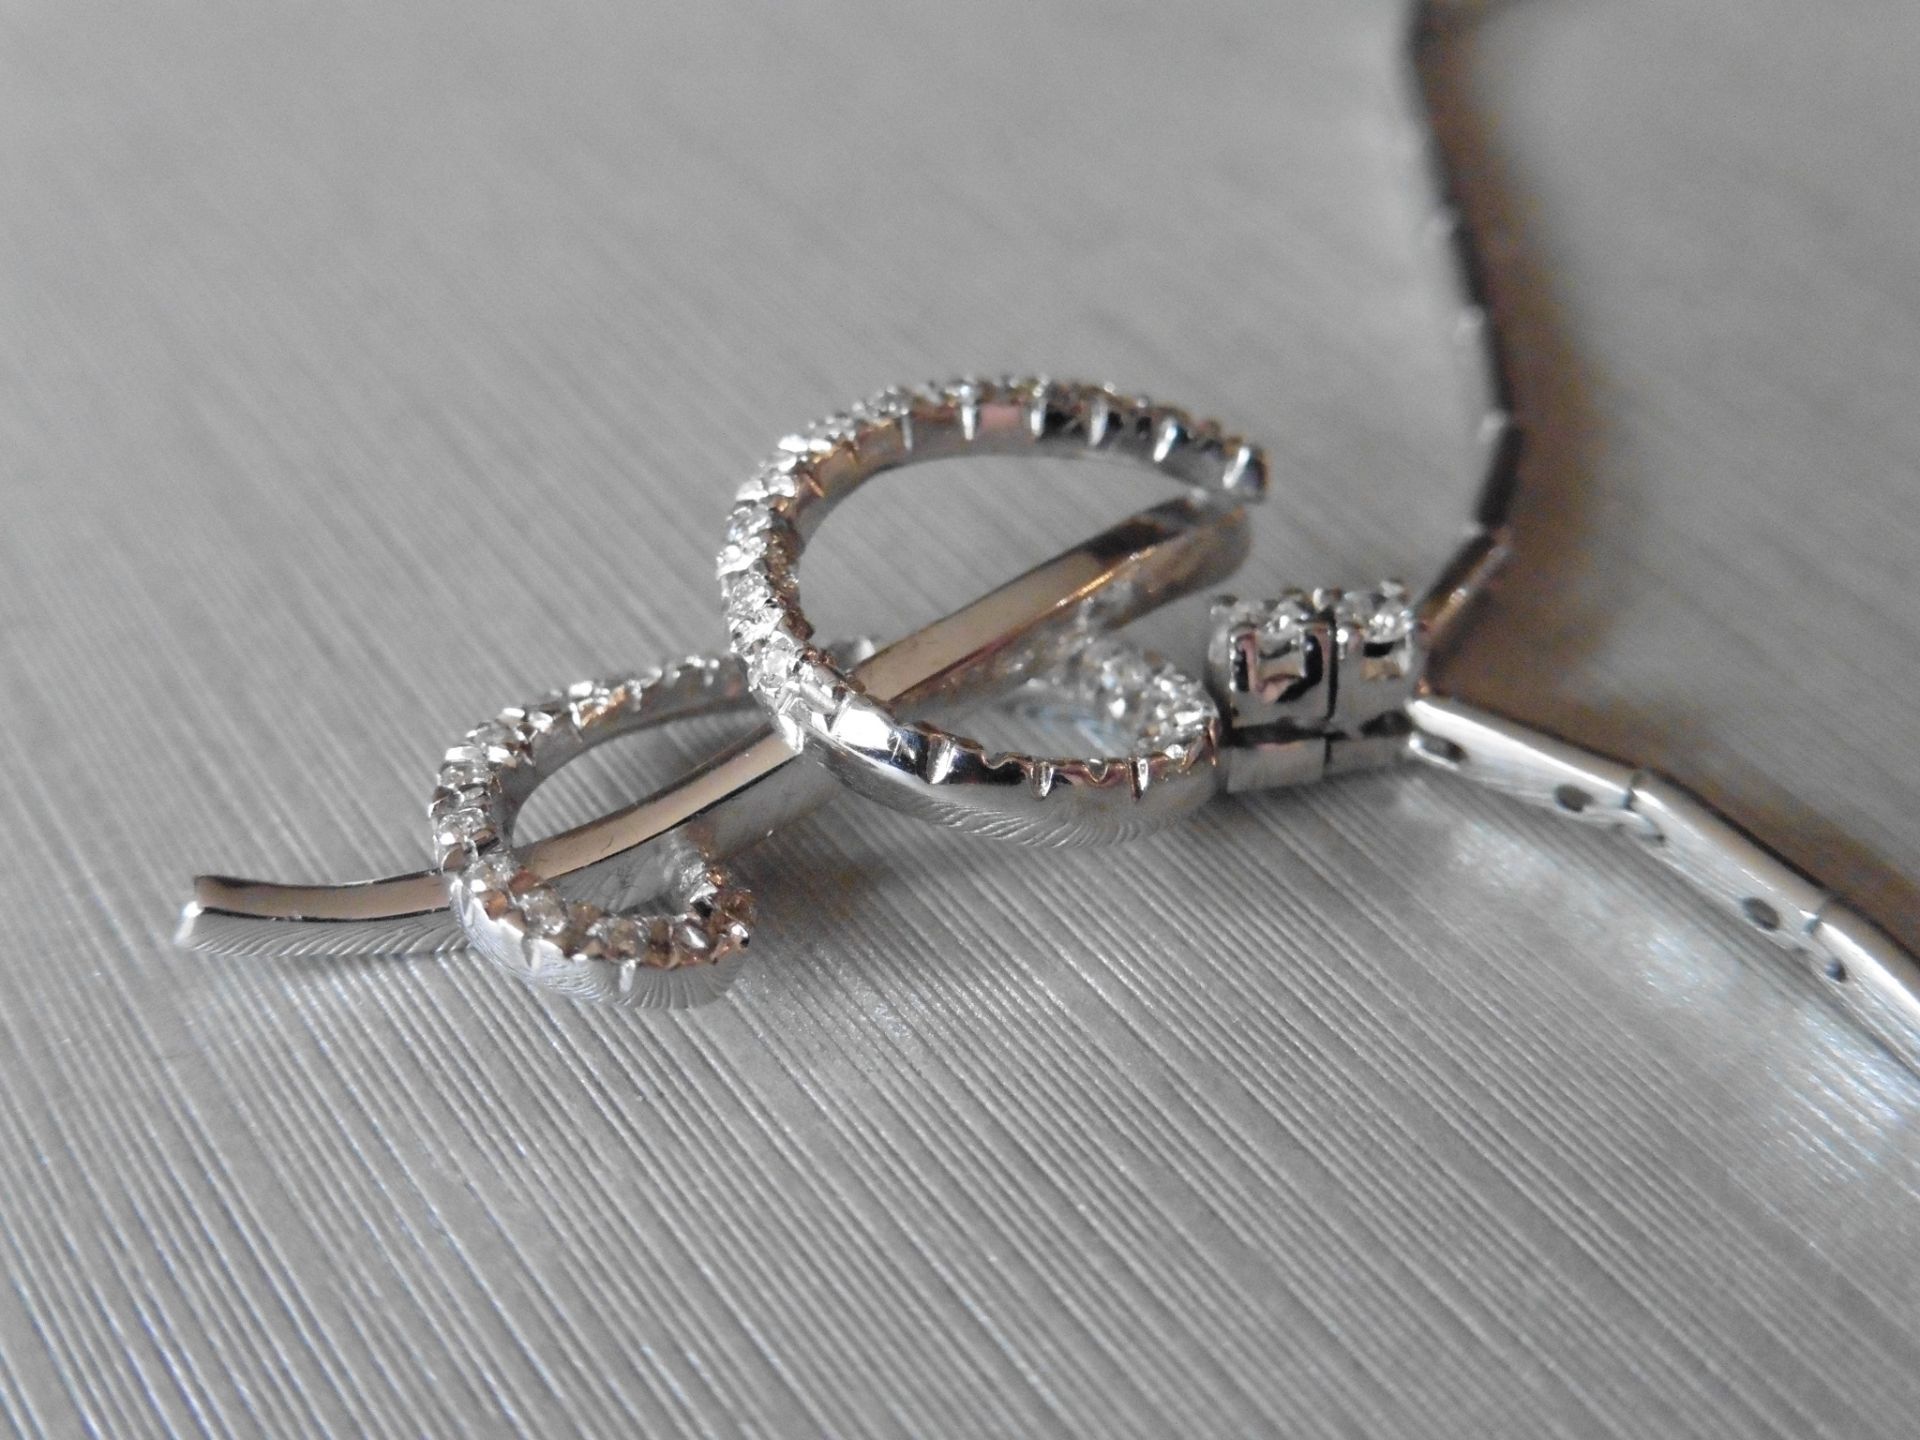 18ct white gold fancy diamond set pendant. Swirl design with small brilliant cut diamonds, H colour, - Image 3 of 6